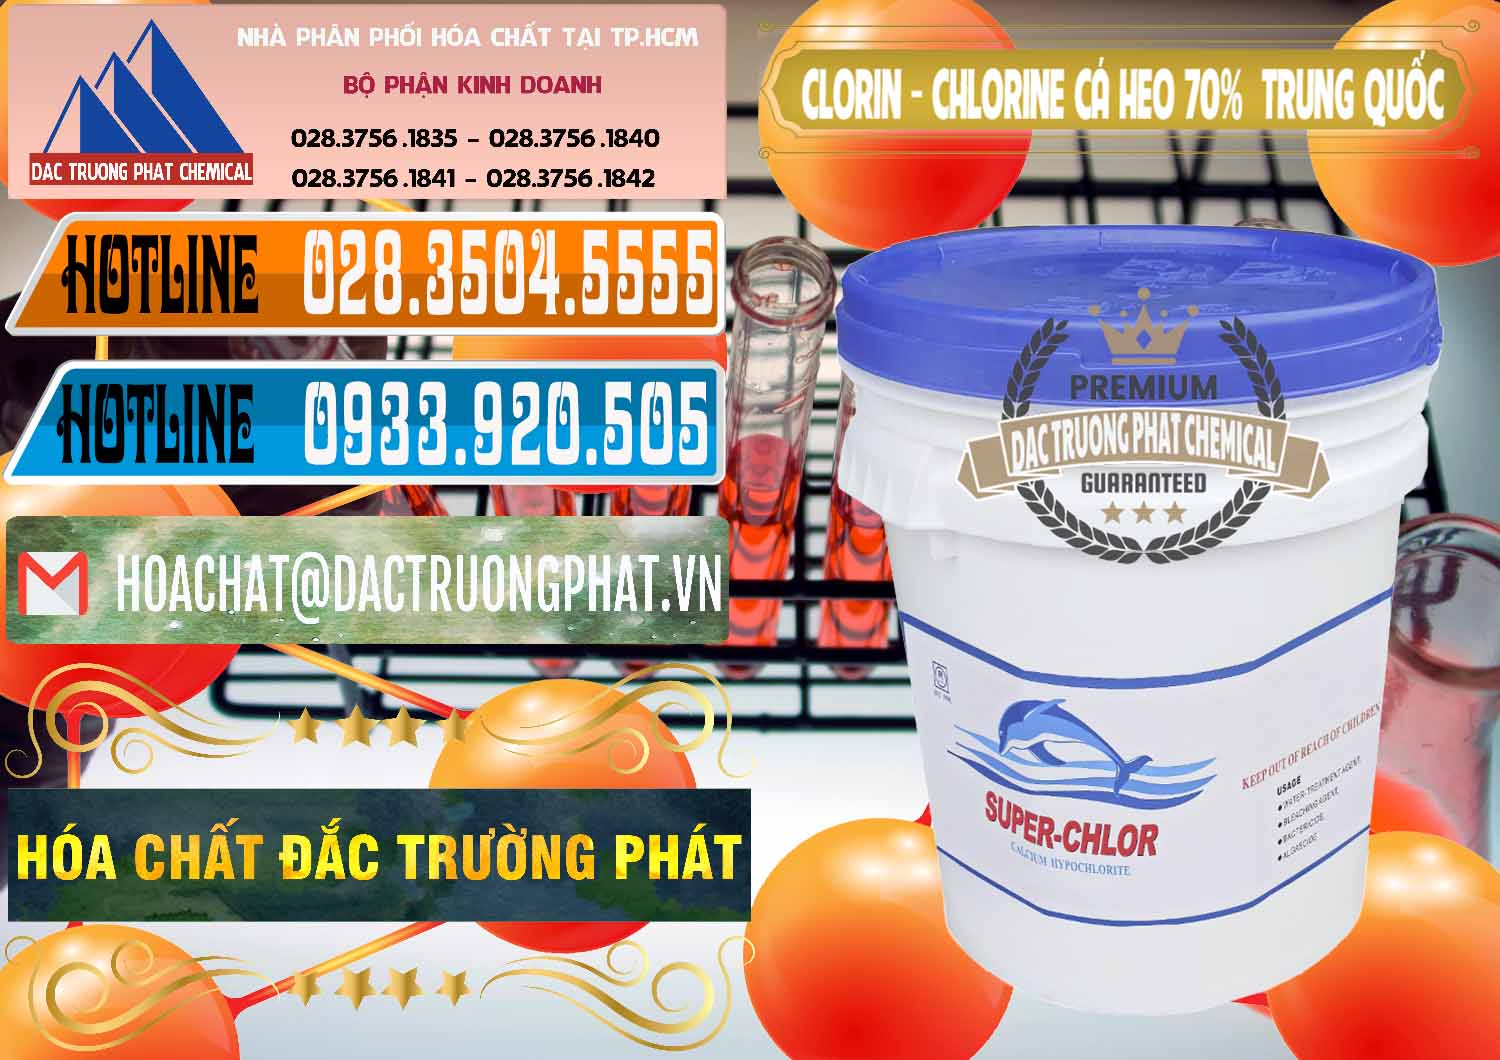 Cty phân phối và bán Clorin - Chlorine Cá Heo 70% Super Chlor Nắp Xanh Trung Quốc China - 0209 - Cty kinh doanh & cung cấp hóa chất tại TP.HCM - stmp.net